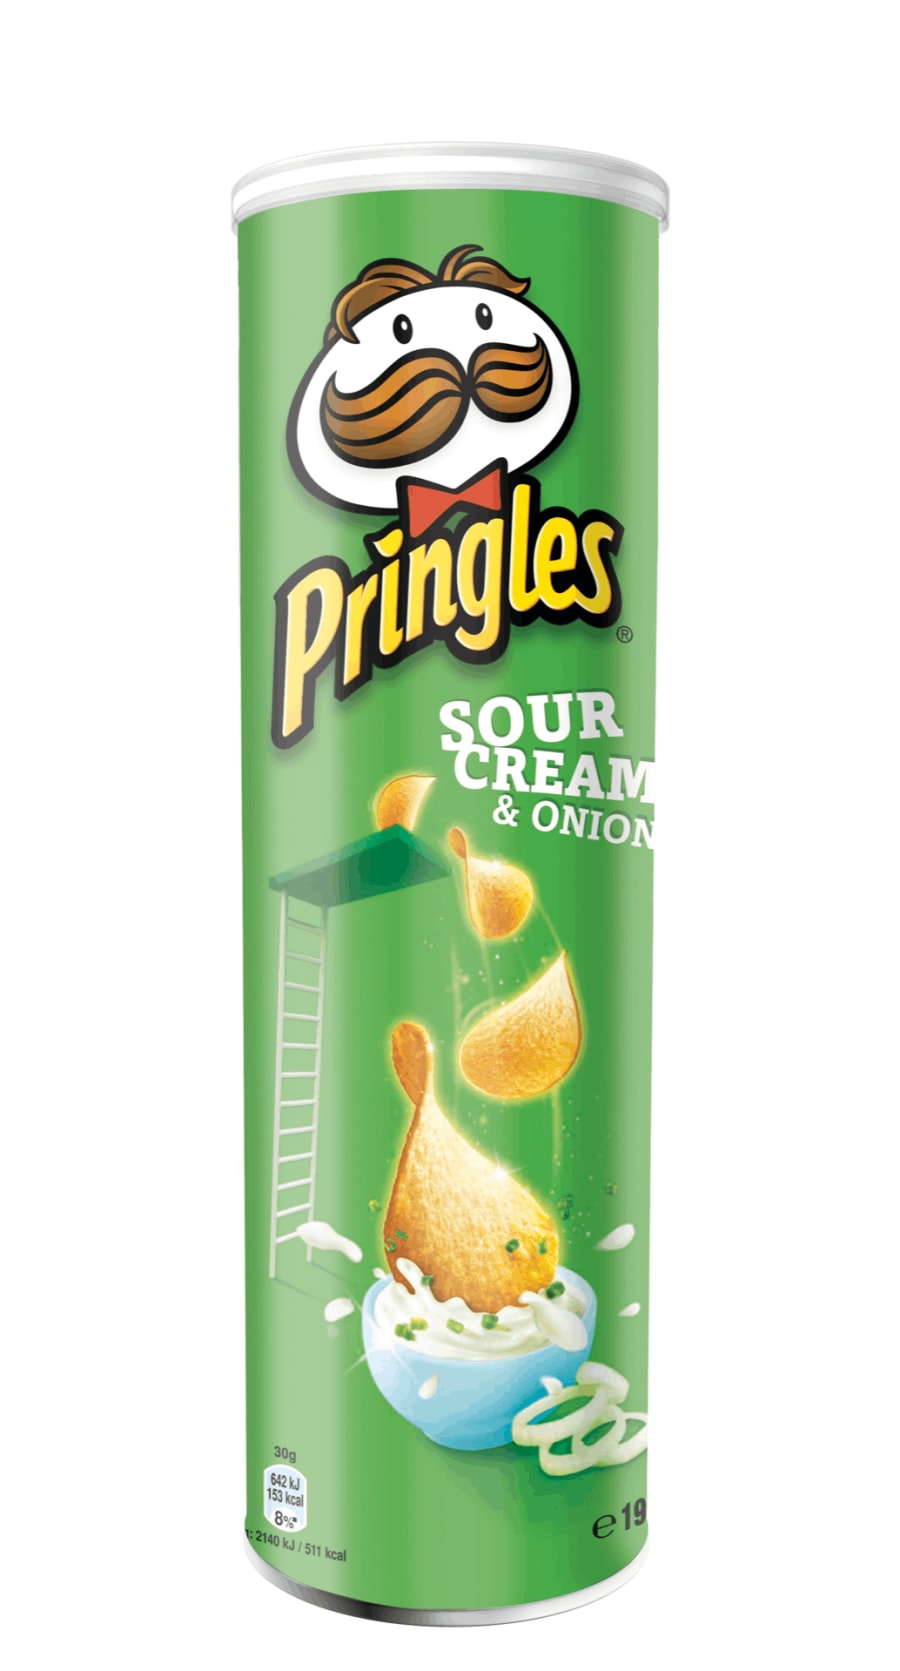 Pringles sour cream & onion